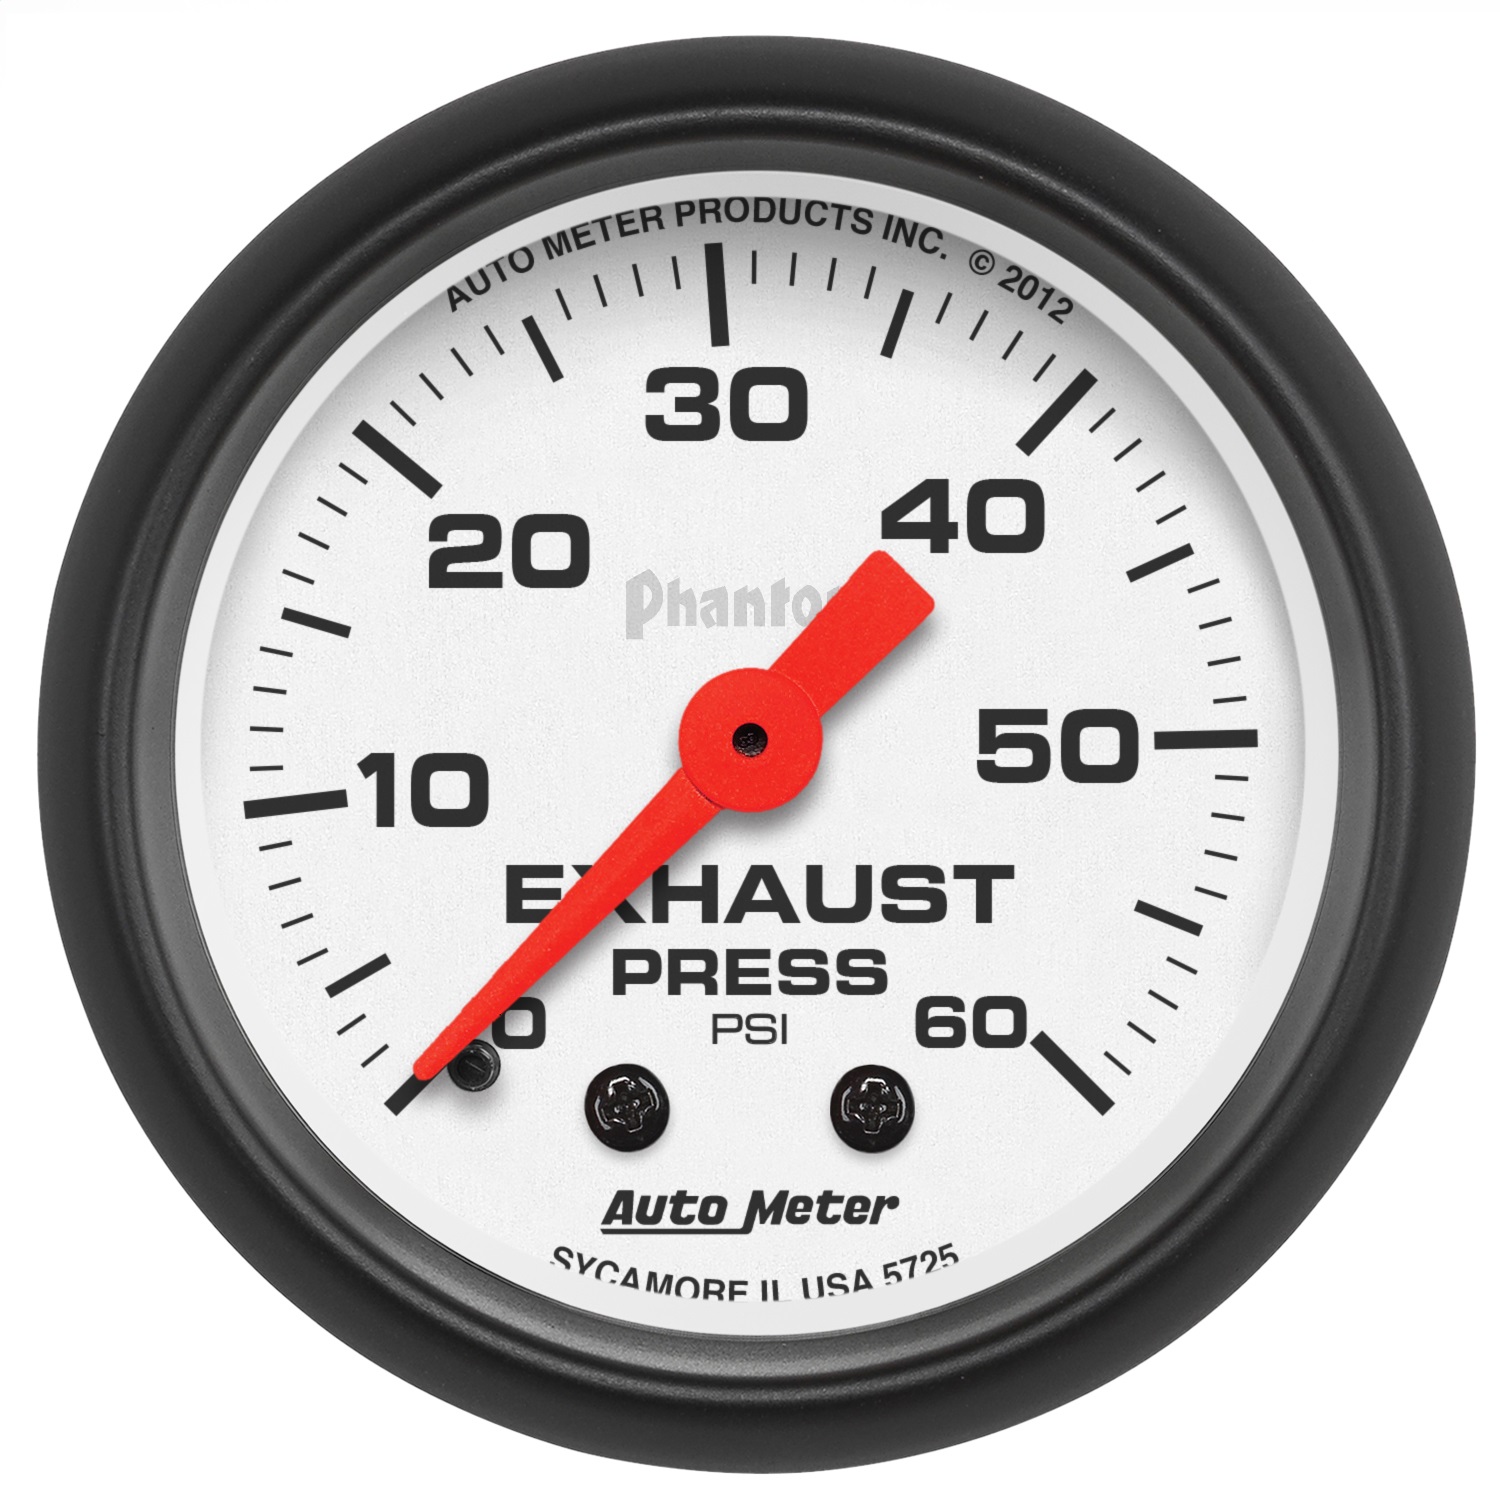 Auto Meter Auto Meter 5725 Phantom Mechanical Exhaust Pressure Gauge